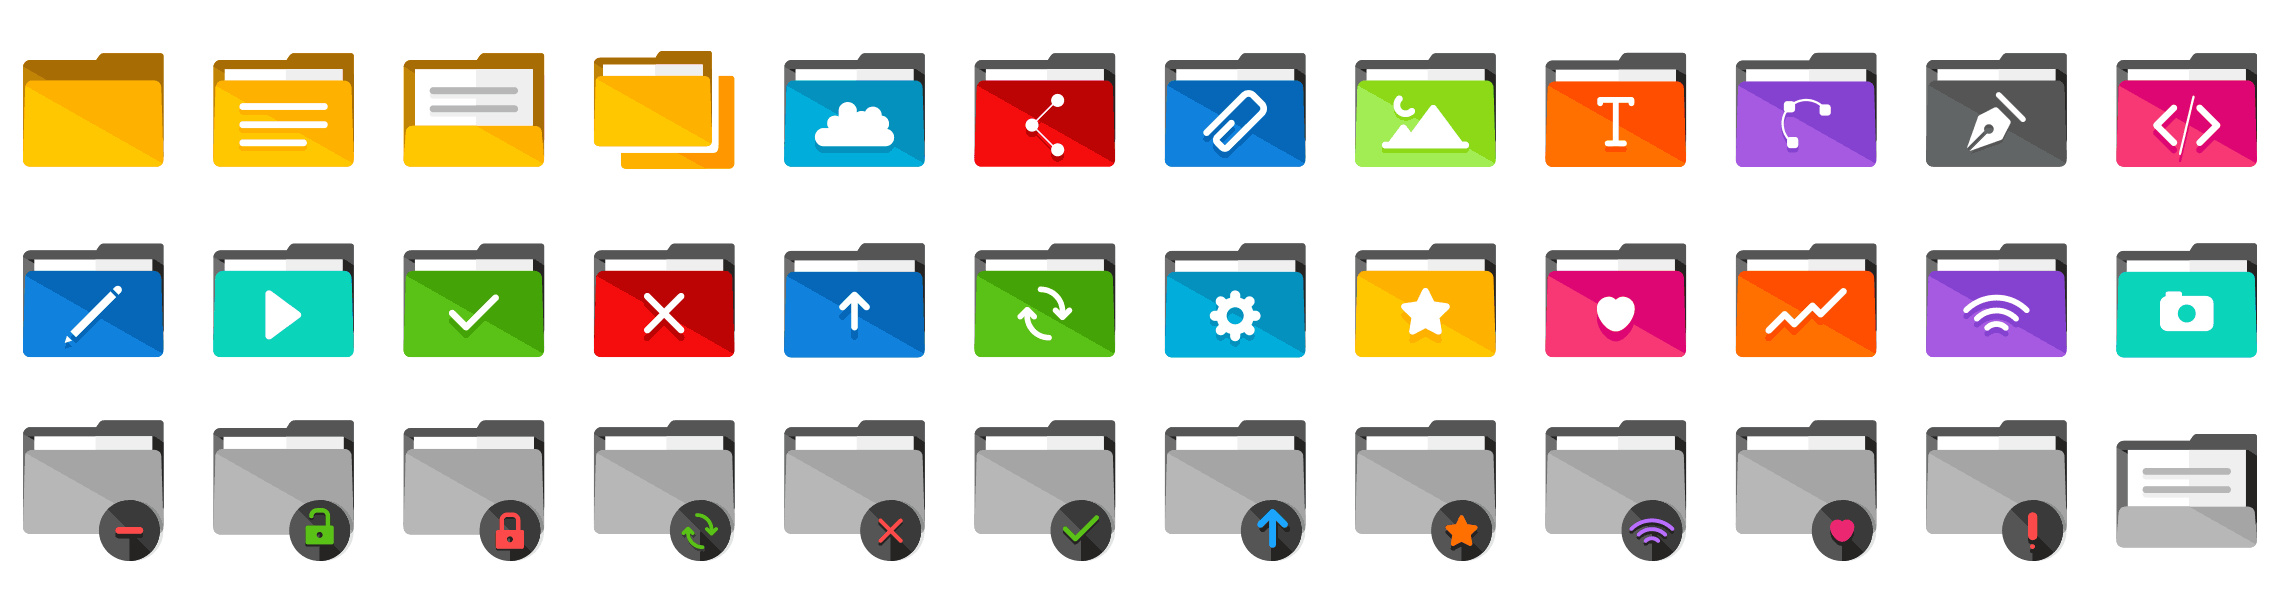 Folders-flat-icons